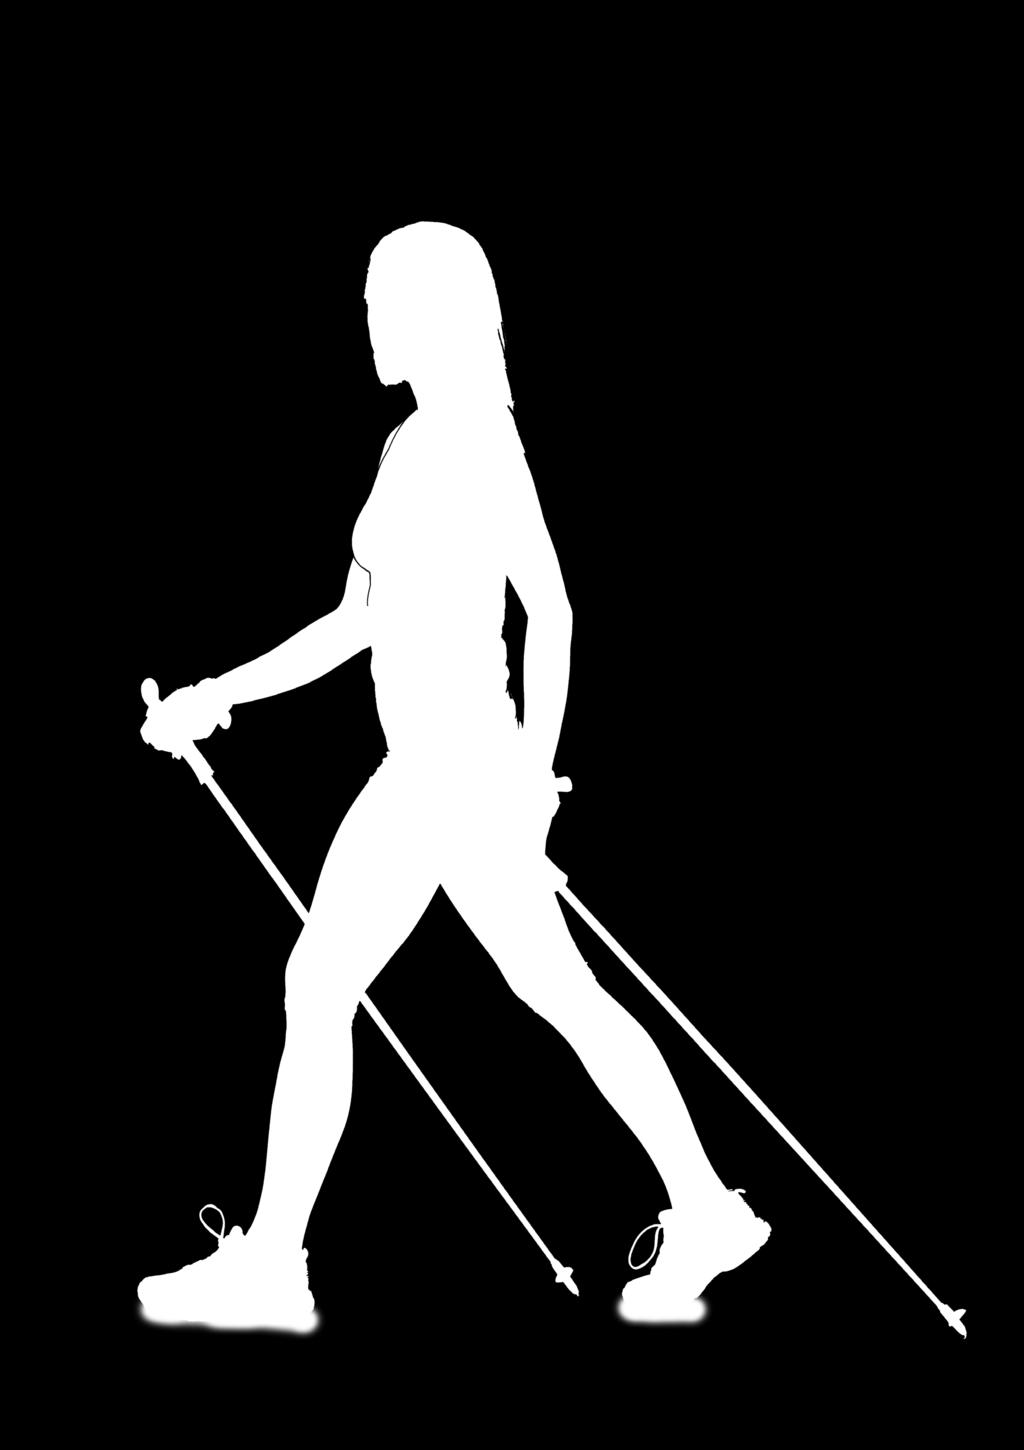 Nordijsko hodanje prvi put predstavljeno je u Finskoj krajem prošlog stoljeća i od tada se proučava utjecaj ove aktivnosti na organizam i zdravlje.